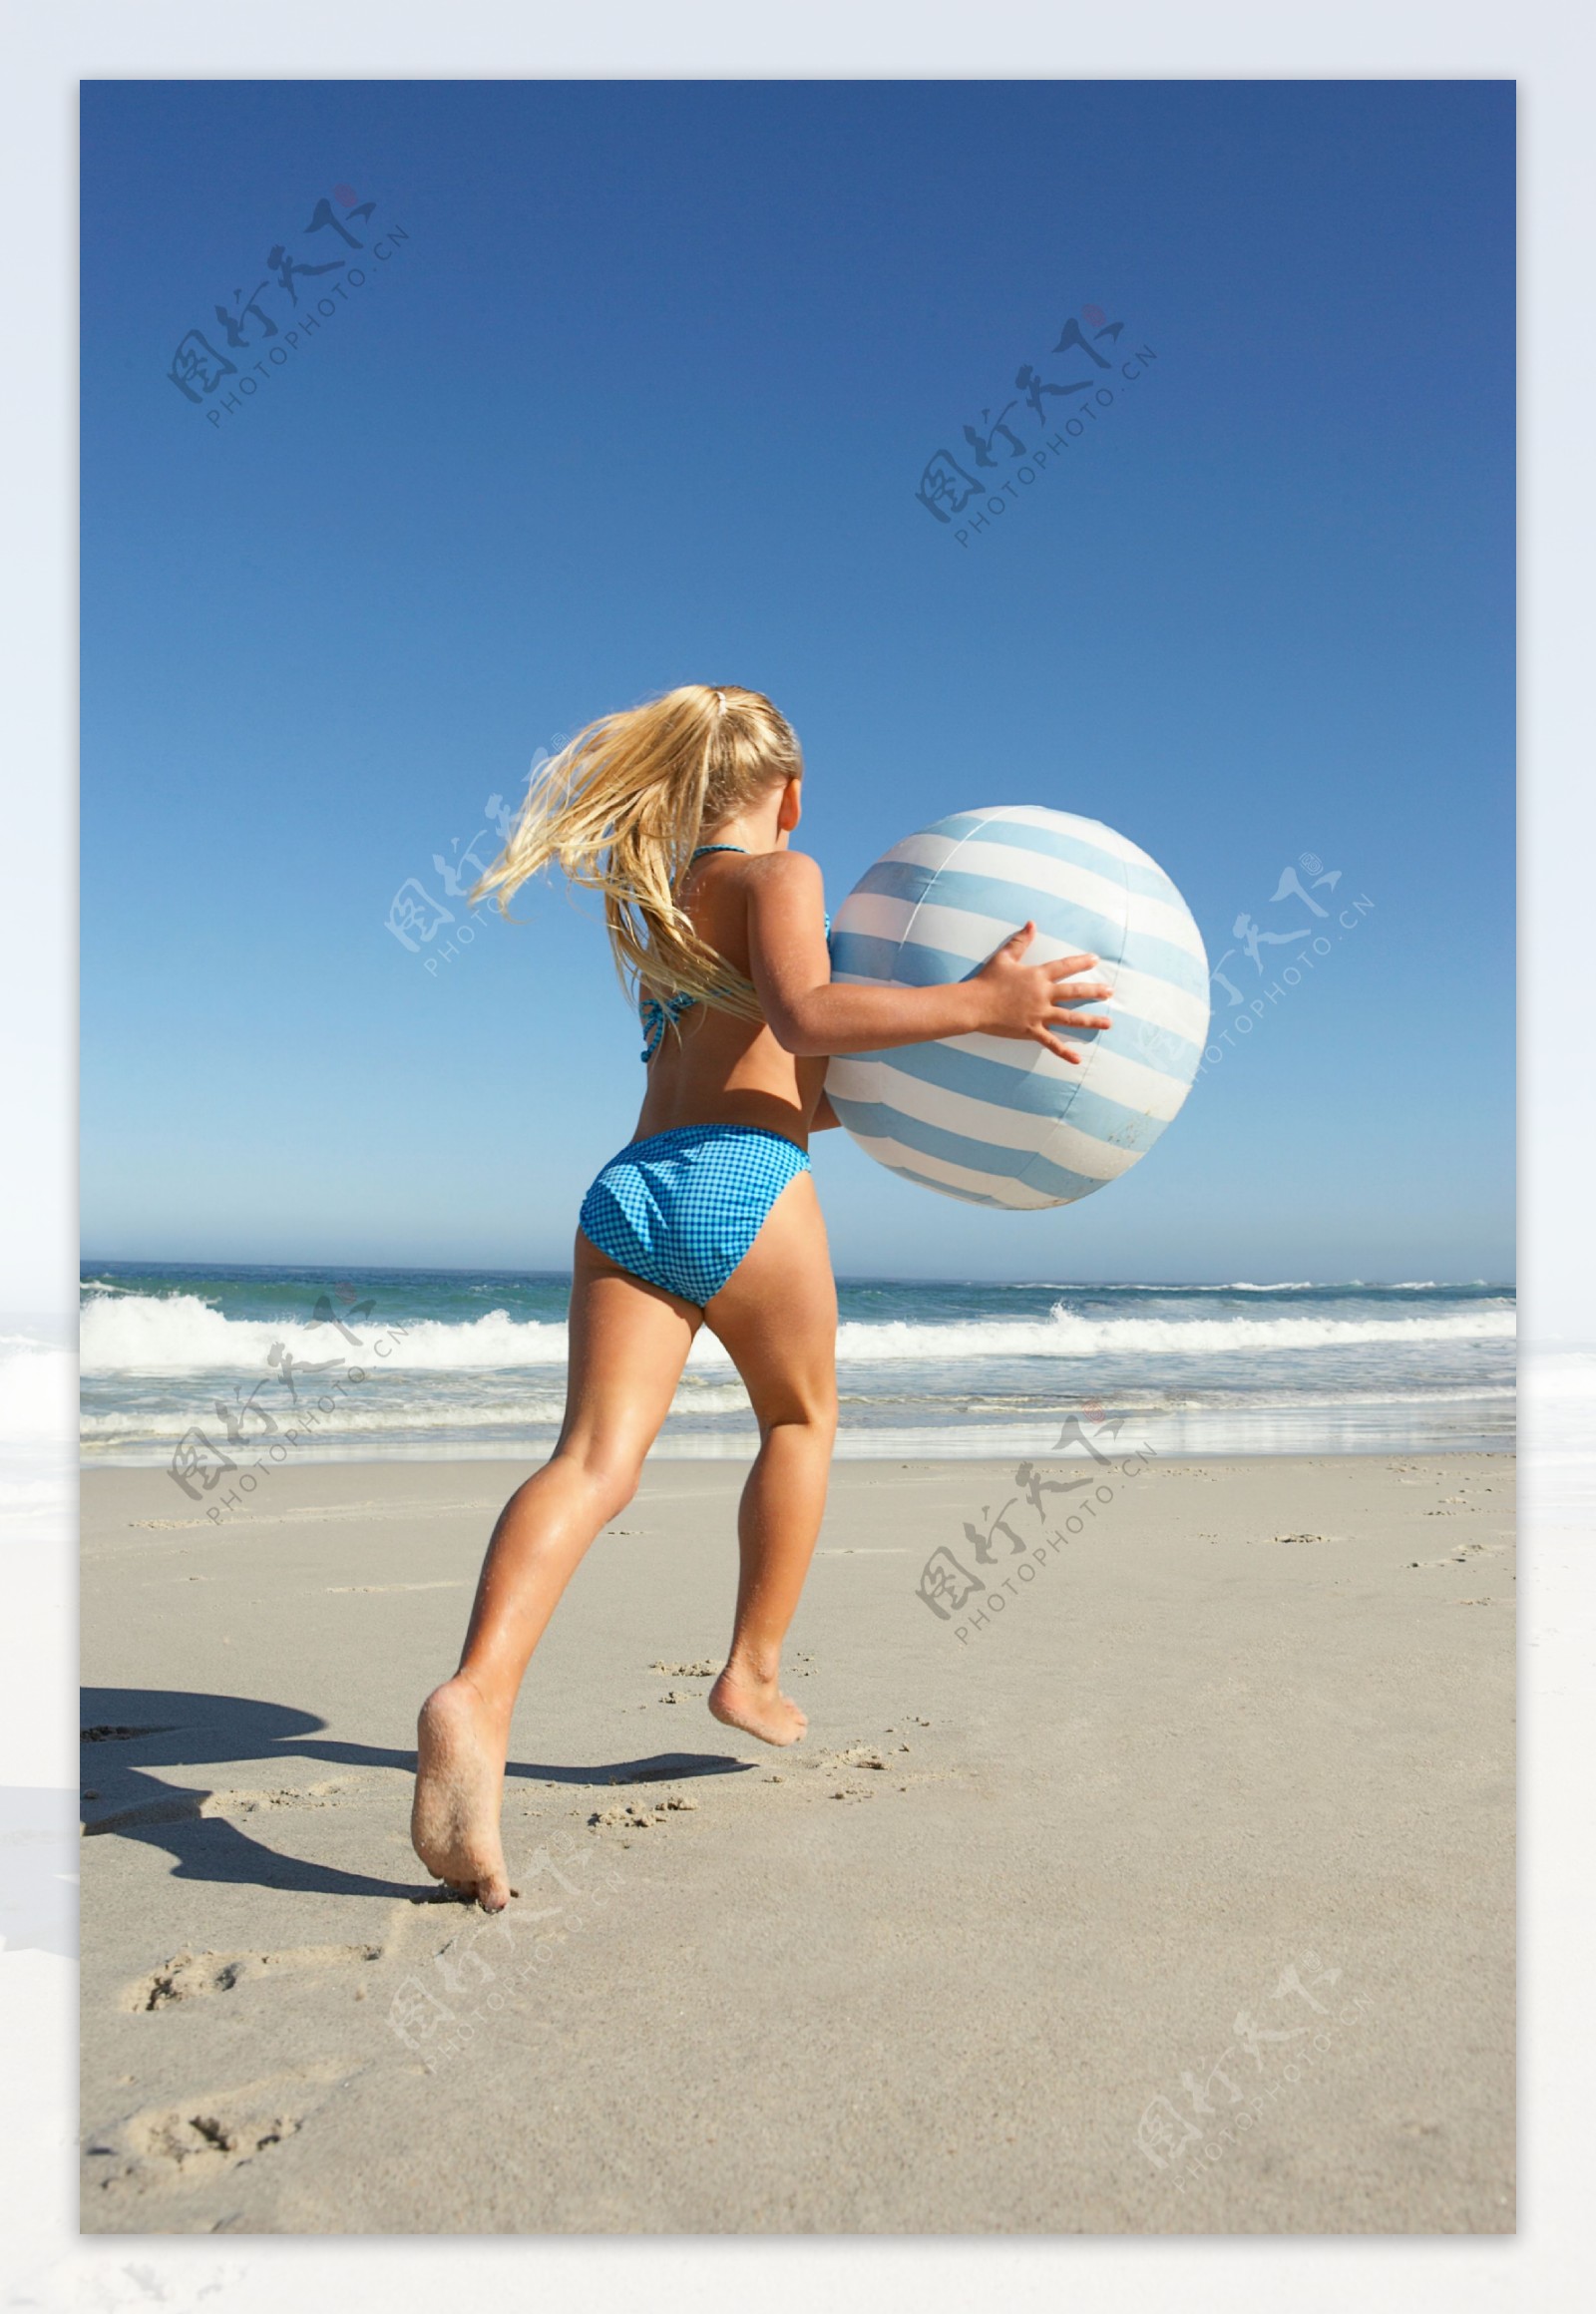 沙滩上玩皮球的美女图片